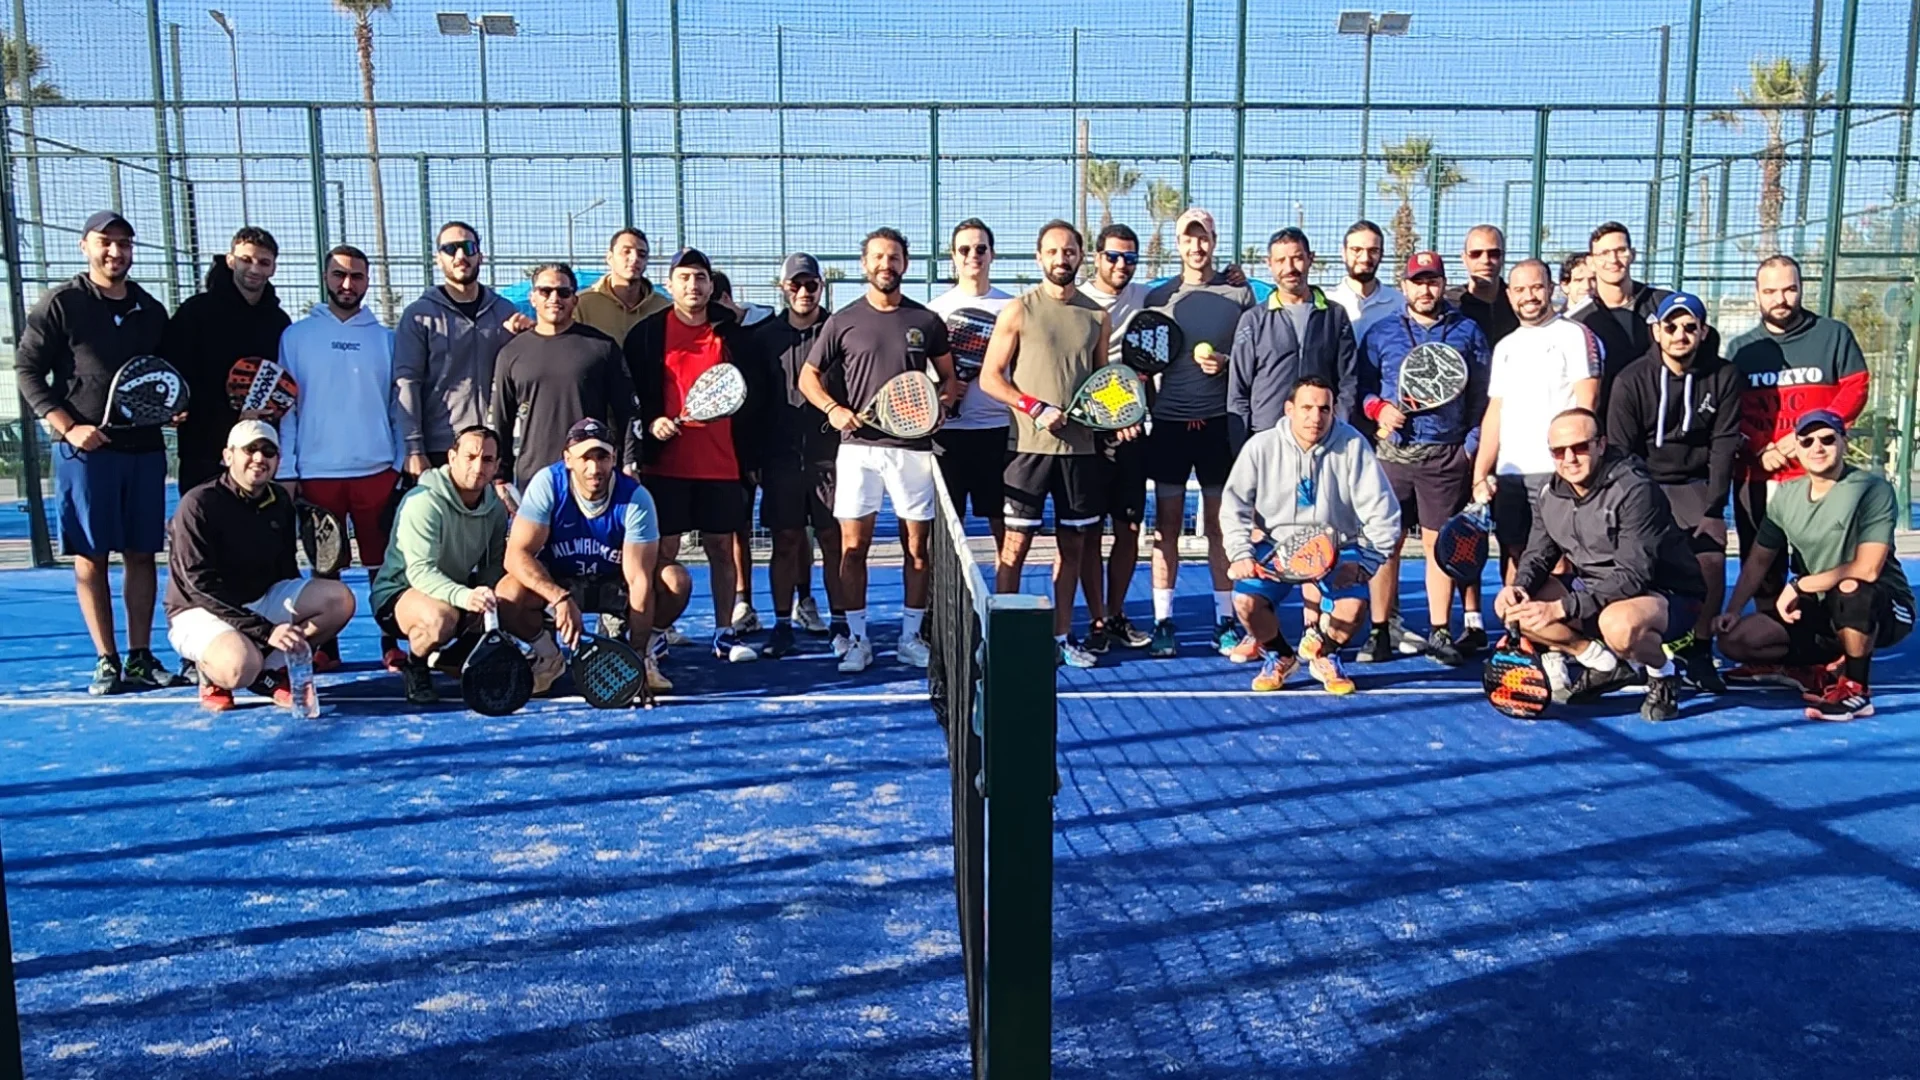 Padel Aktywna gra: marokańska społeczność sportowa łącząca przyjemność z gry i zaangażowanie społeczne